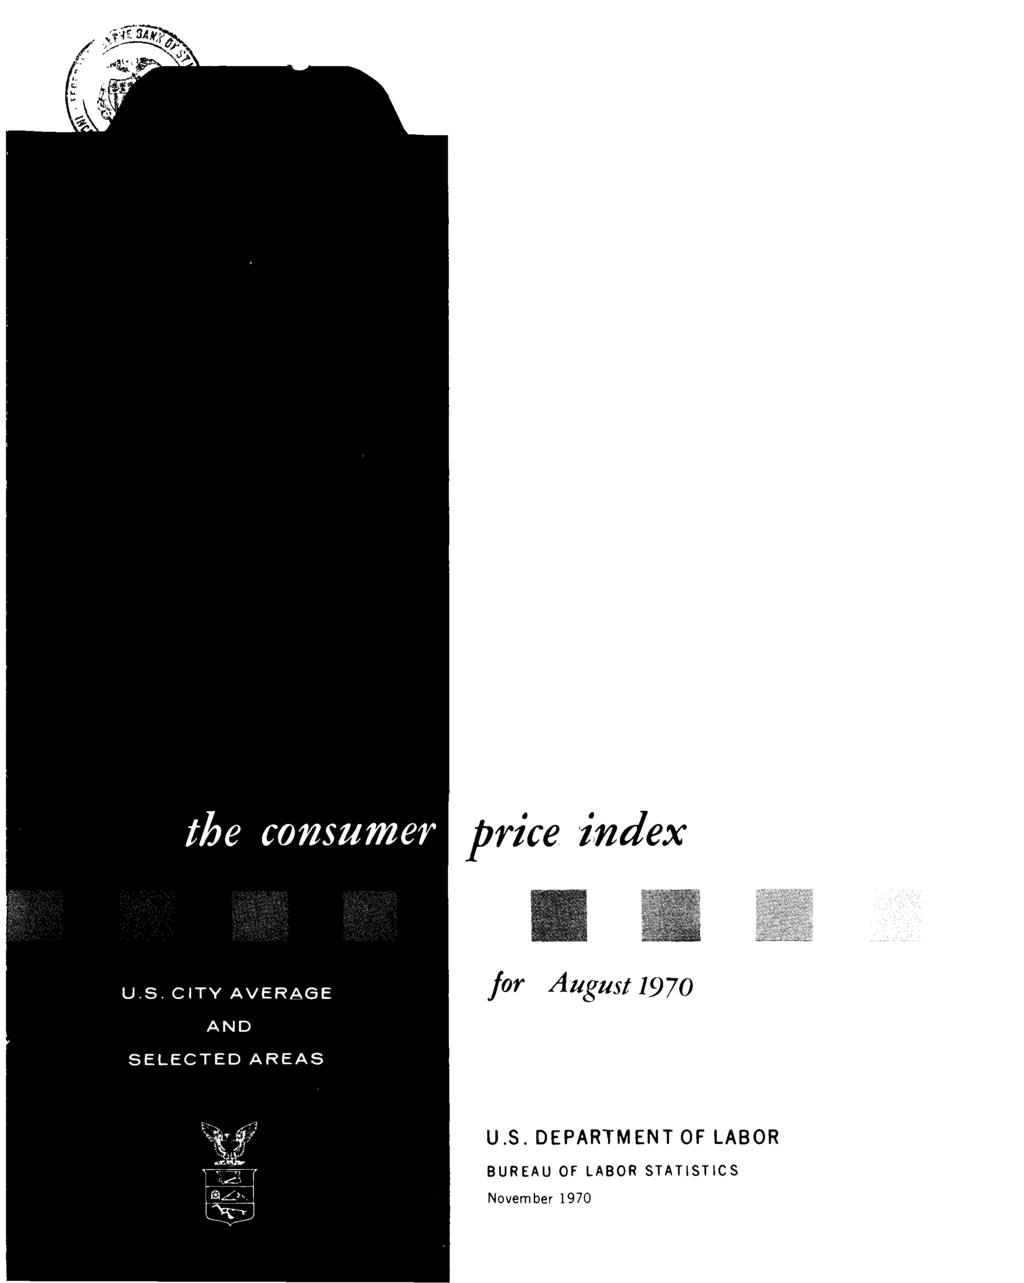 the consumer price index U.S.